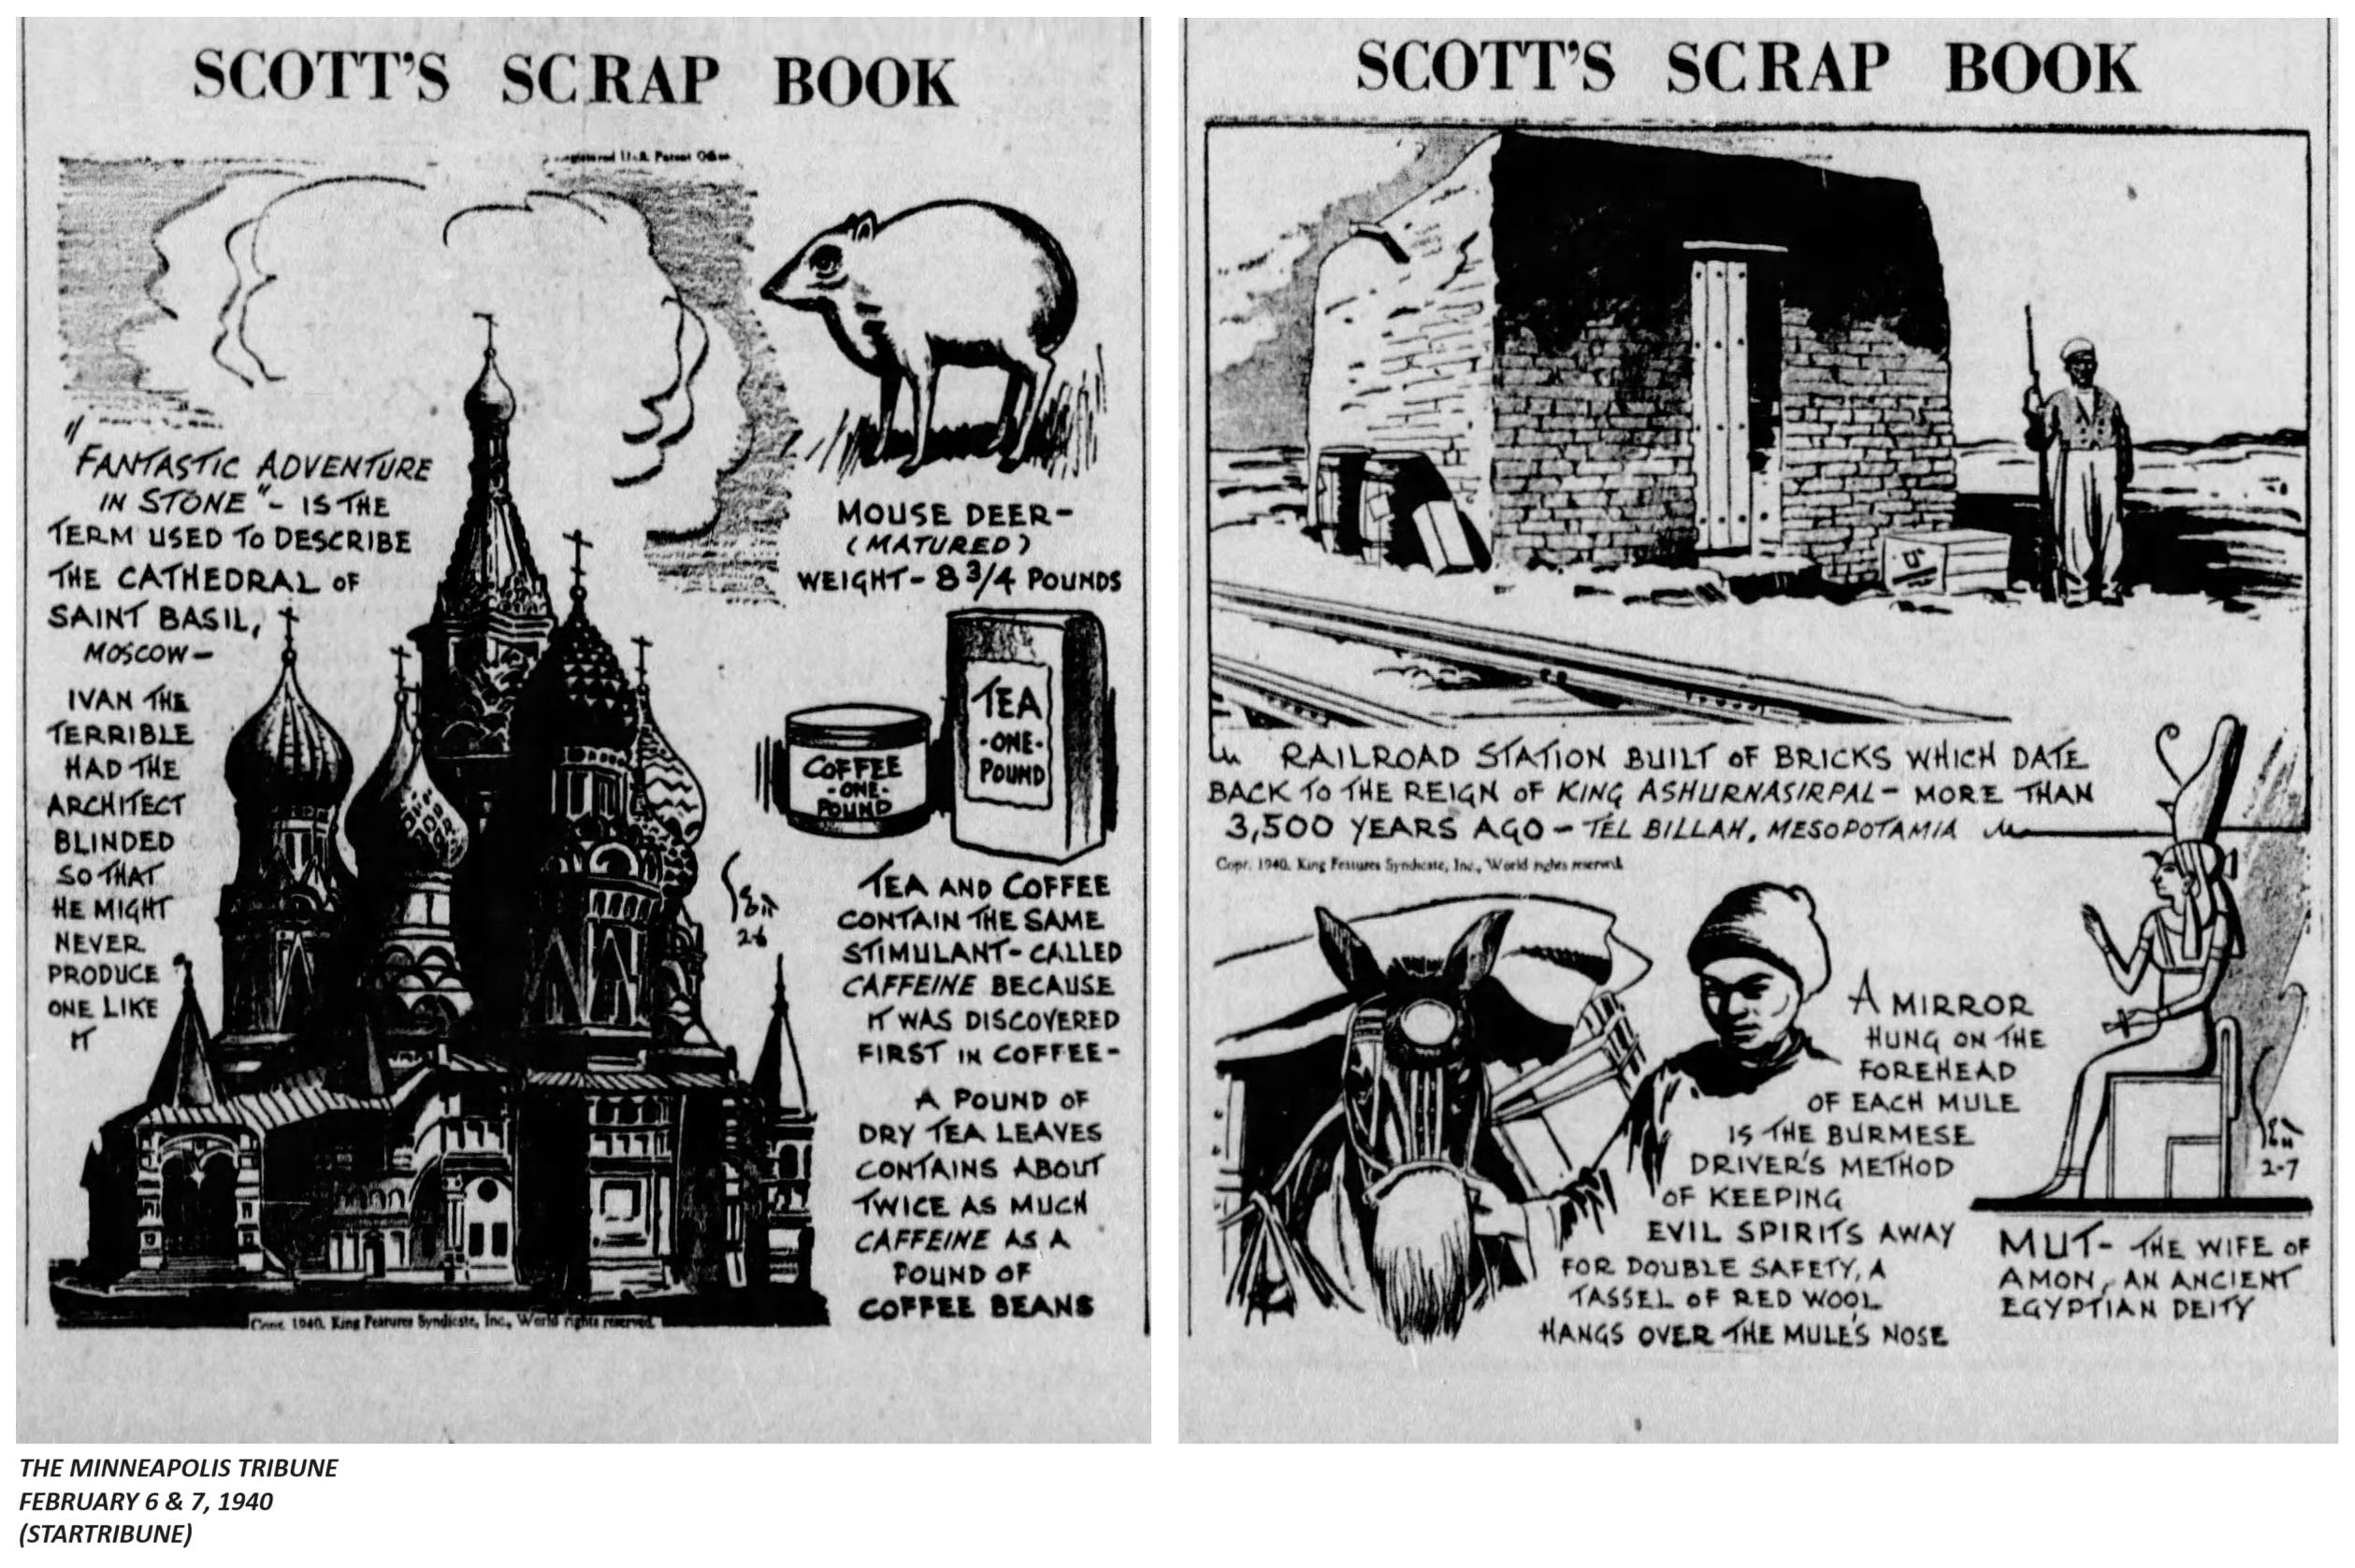 1940. SCOTT'S SCRAP BOOK 2.jpeg